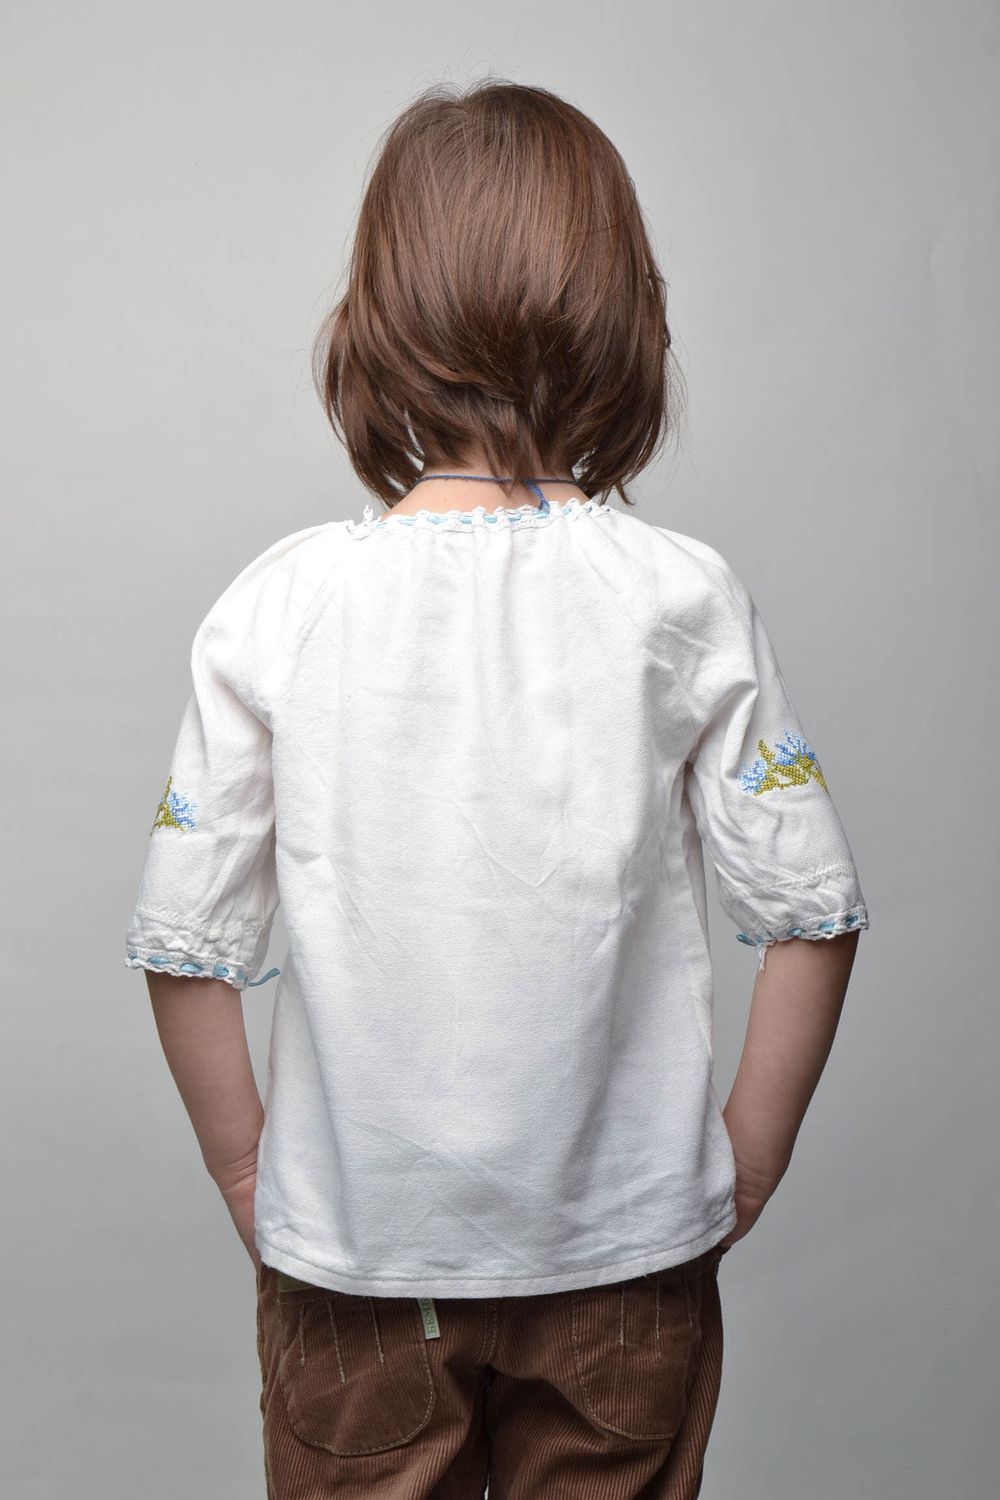 Chemise pour enfant blanche brodée photo 3